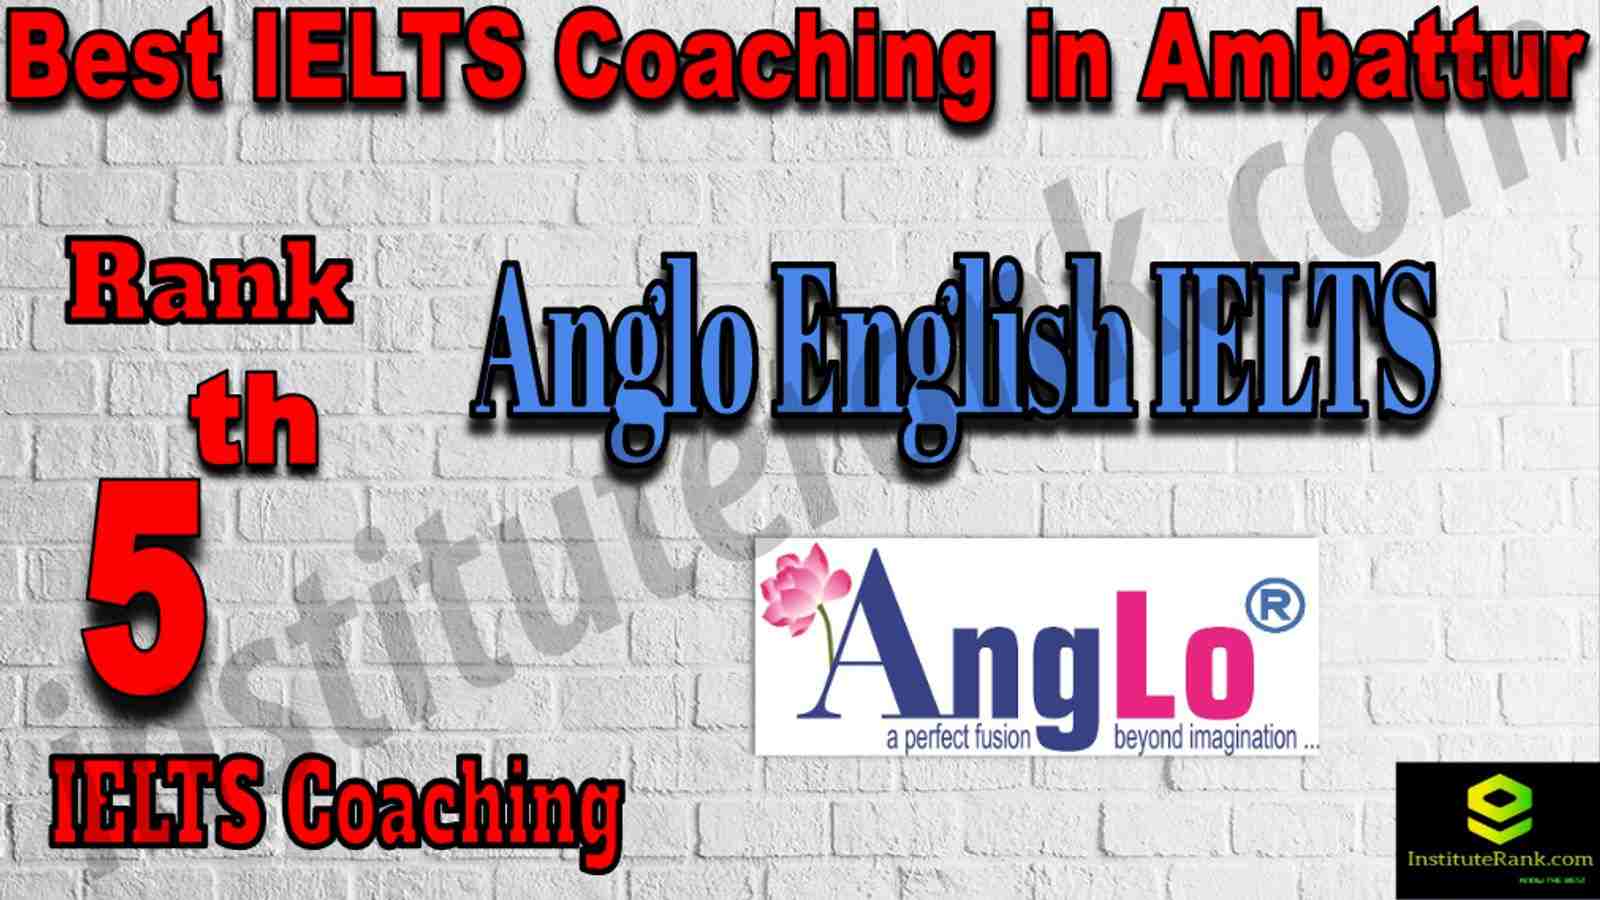 5th Best IELTS Coaching in Ambattur